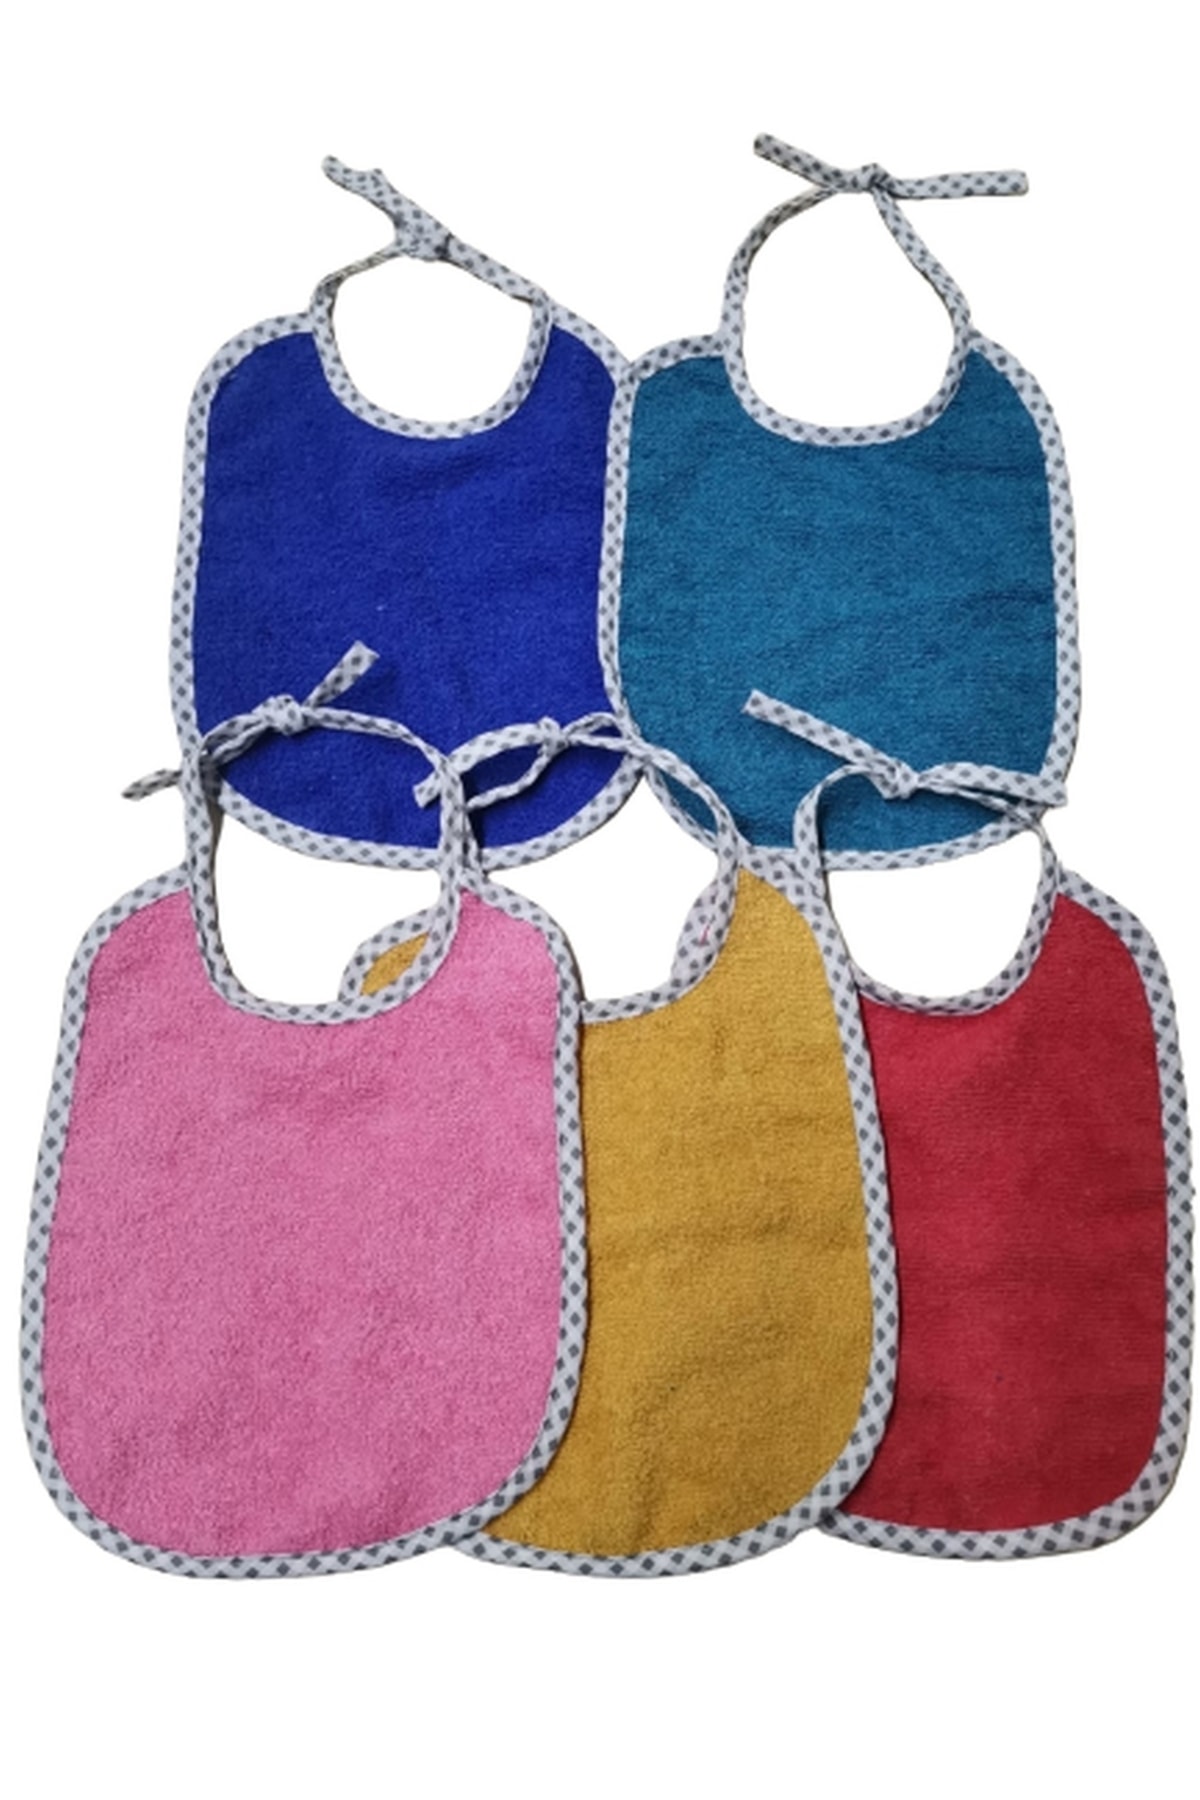 Podiumtex Bebek Önlüğü Farklı Soft Renkler-biyeli-pamuk-5 Adet